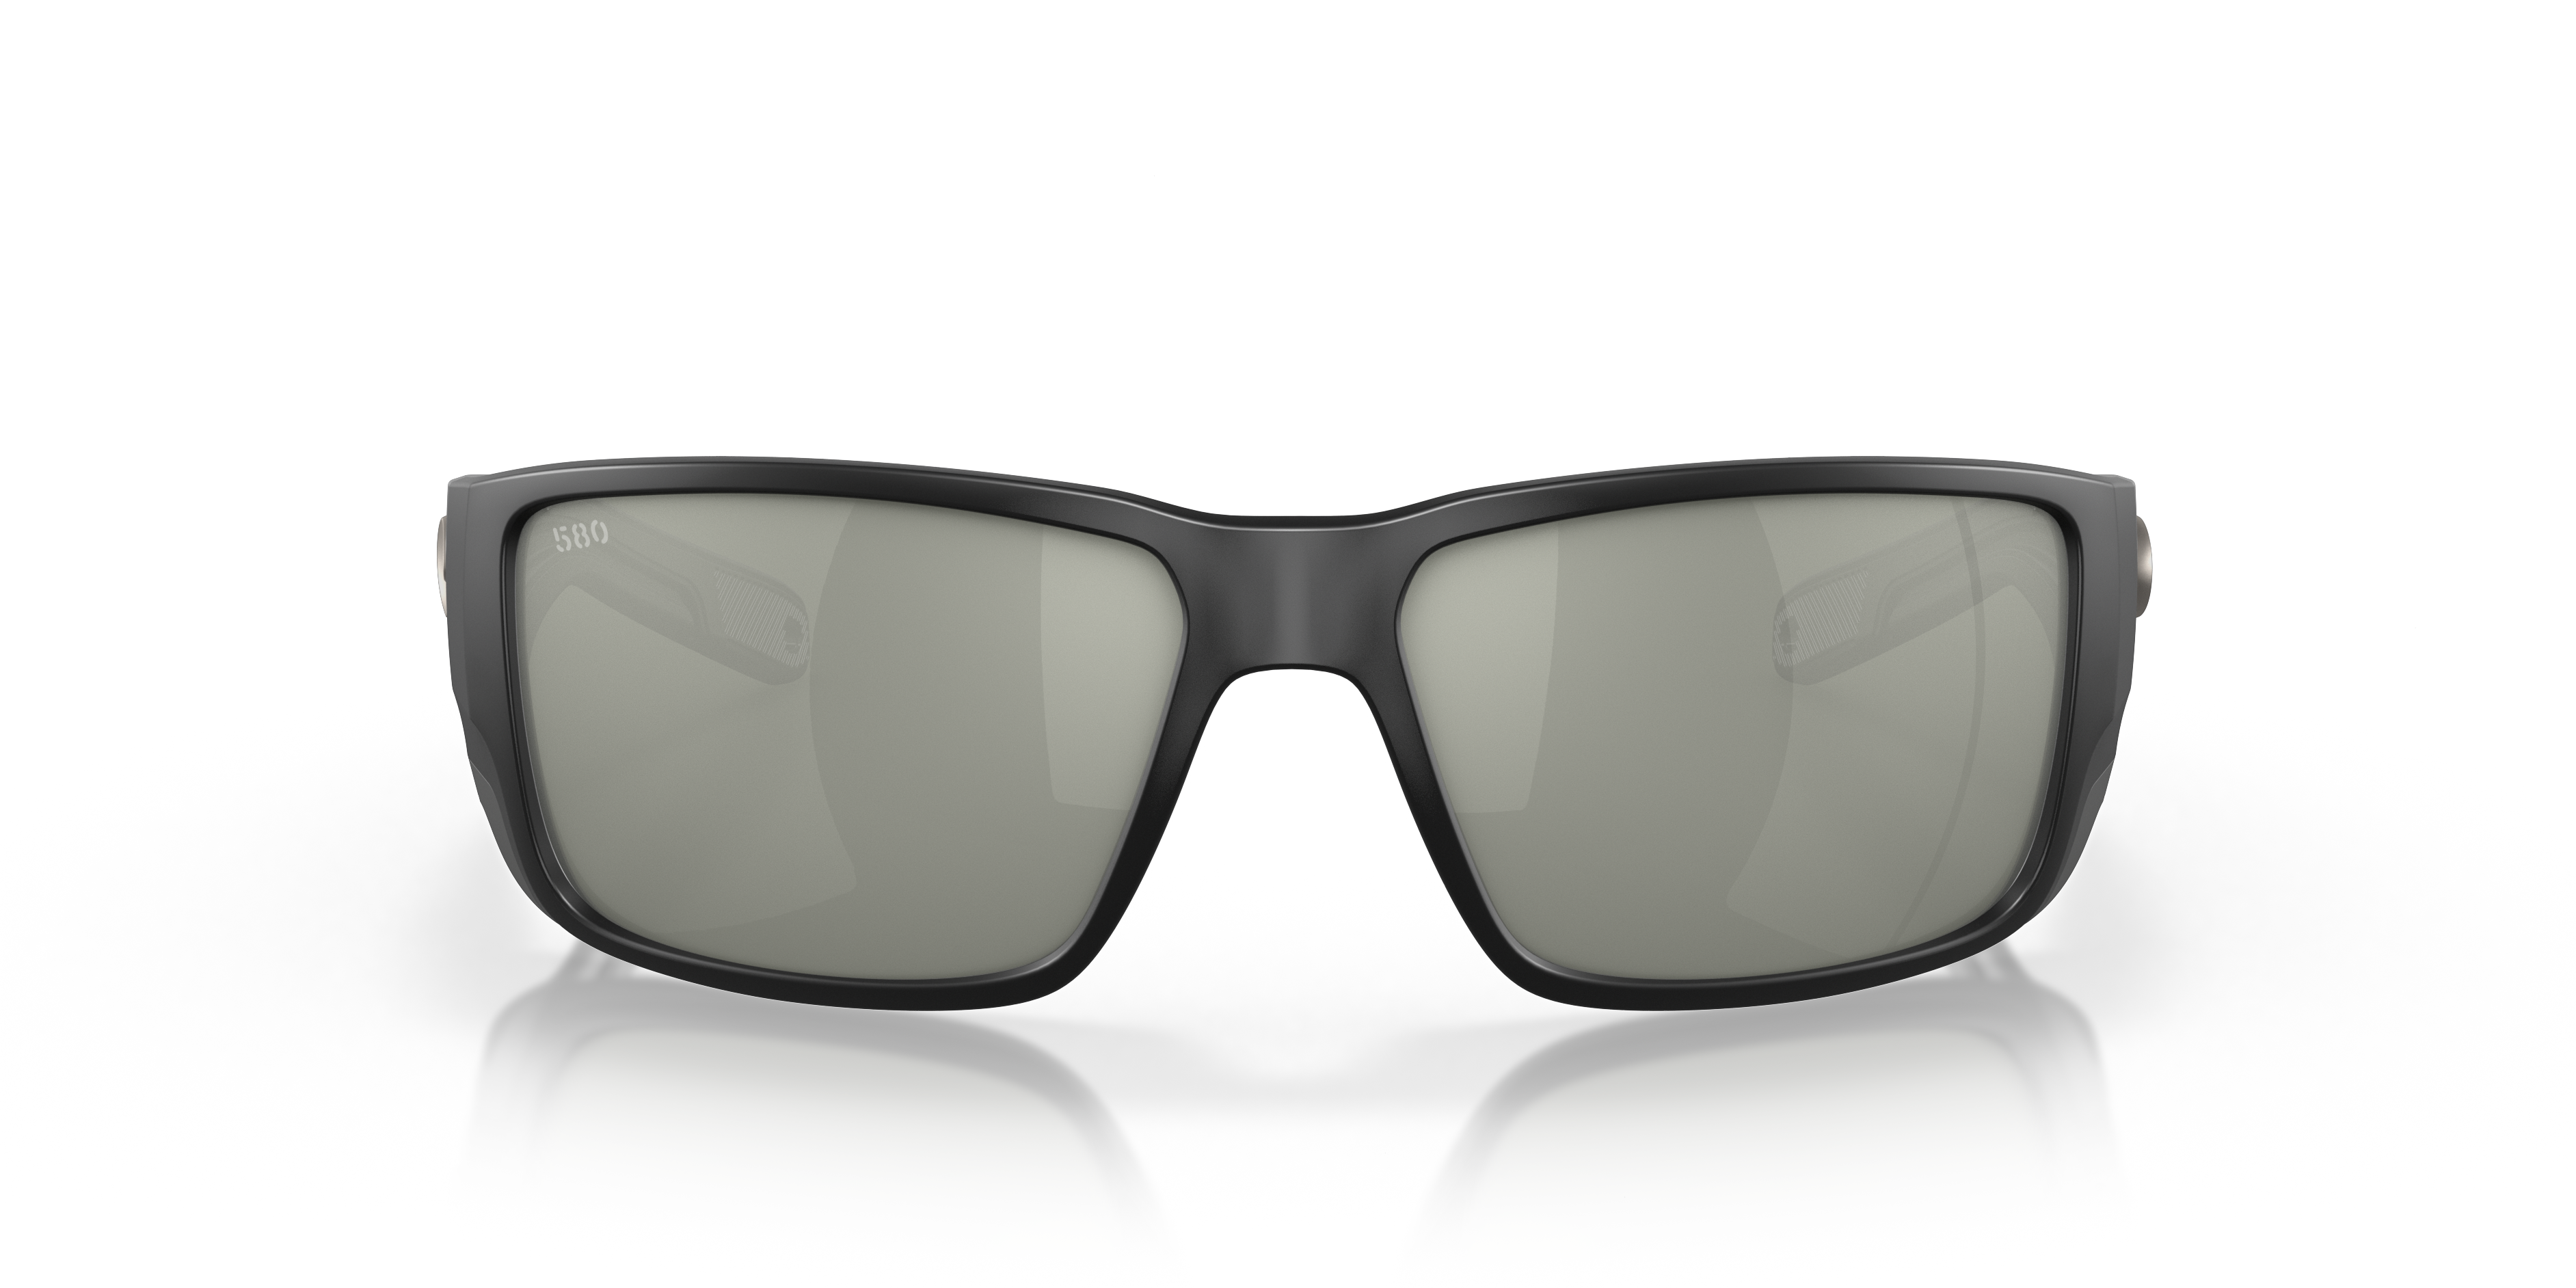 New Costa Del Mar Prop Polarized Sunglasses 580P Matte Black/Silver Gray Mirror 